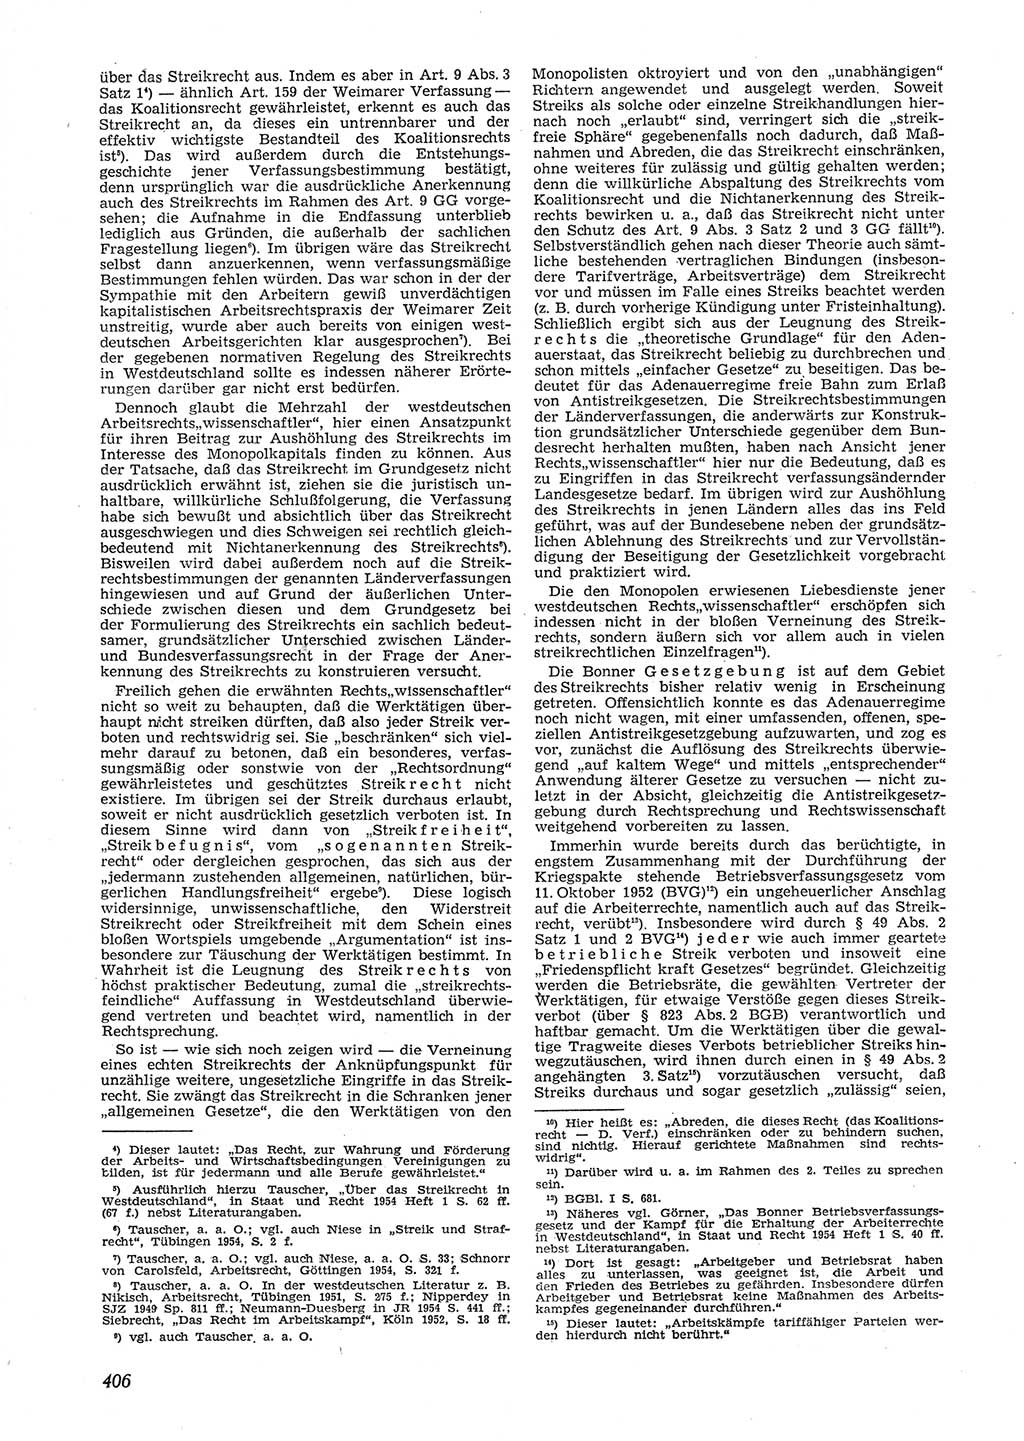 Neue Justiz (NJ), Zeitschrift für Recht und Rechtswissenschaft [Deutsche Demokratische Republik (DDR)], 9. Jahrgang 1955, Seite 406 (NJ DDR 1955, S. 406)